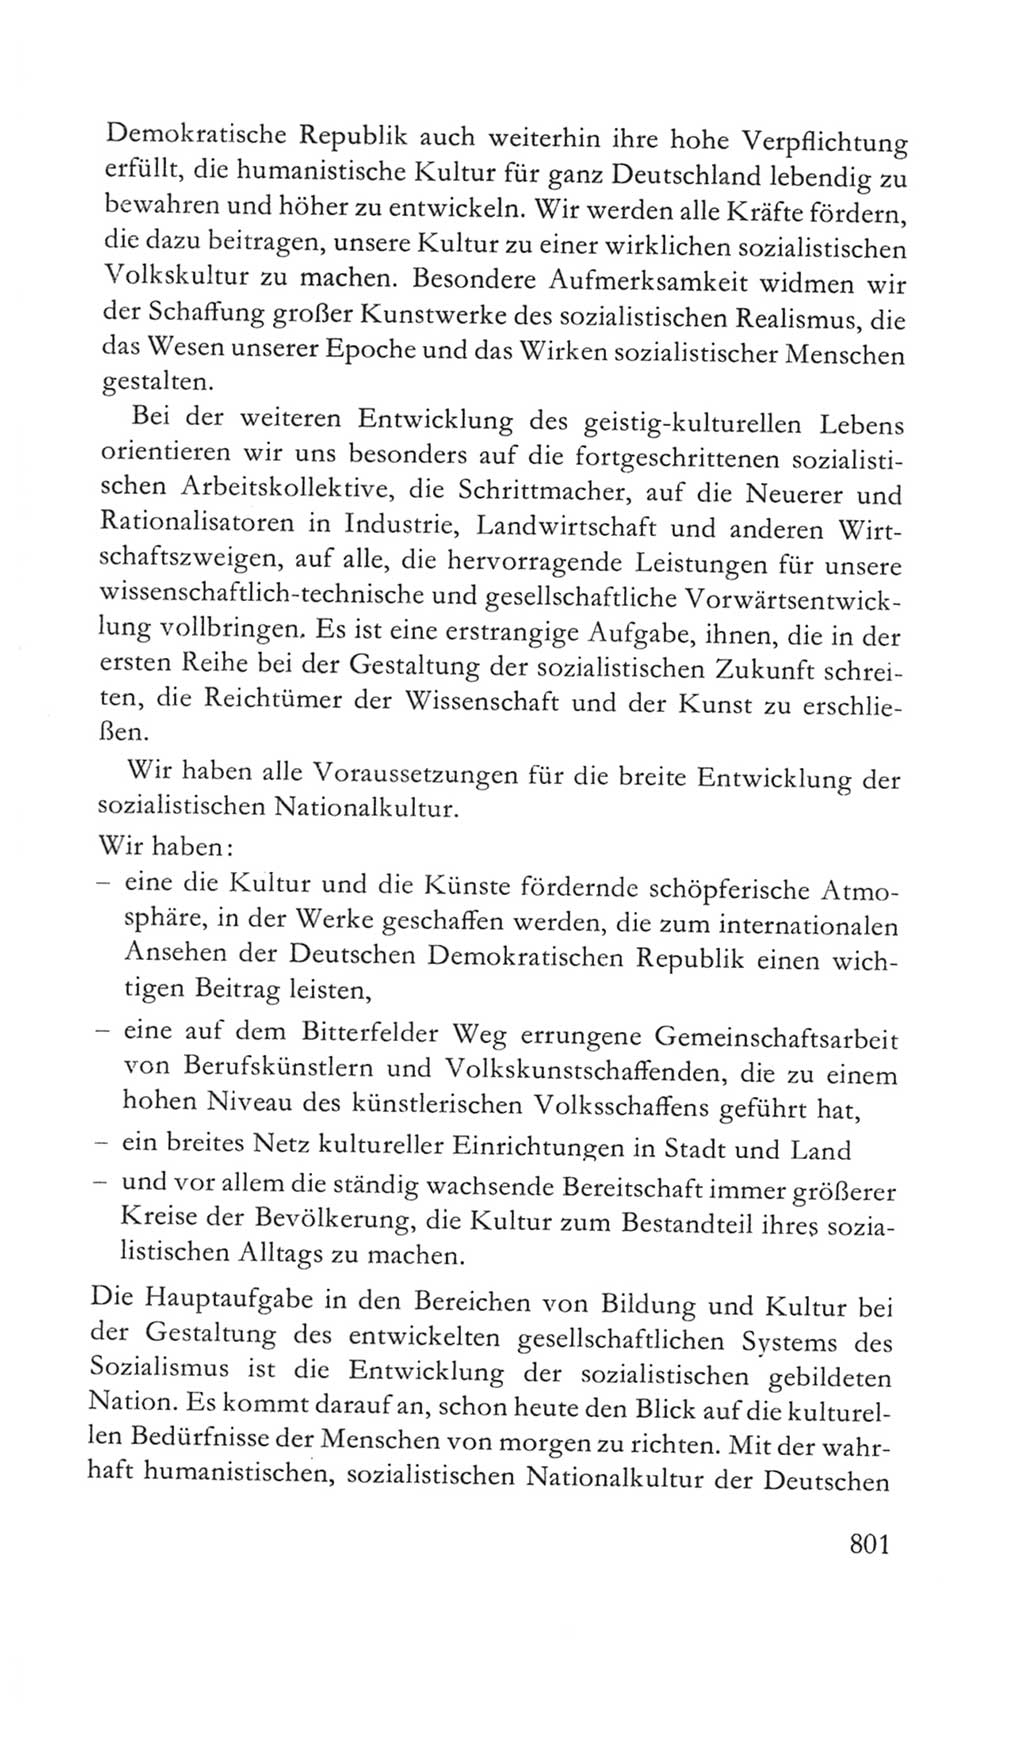 Volkskammer (VK) der Deutschen Demokratischen Republik (DDR) 5. Wahlperiode 1967-1971, Seite 801 (VK. DDR 5. WP. 1967-1971, S. 801)